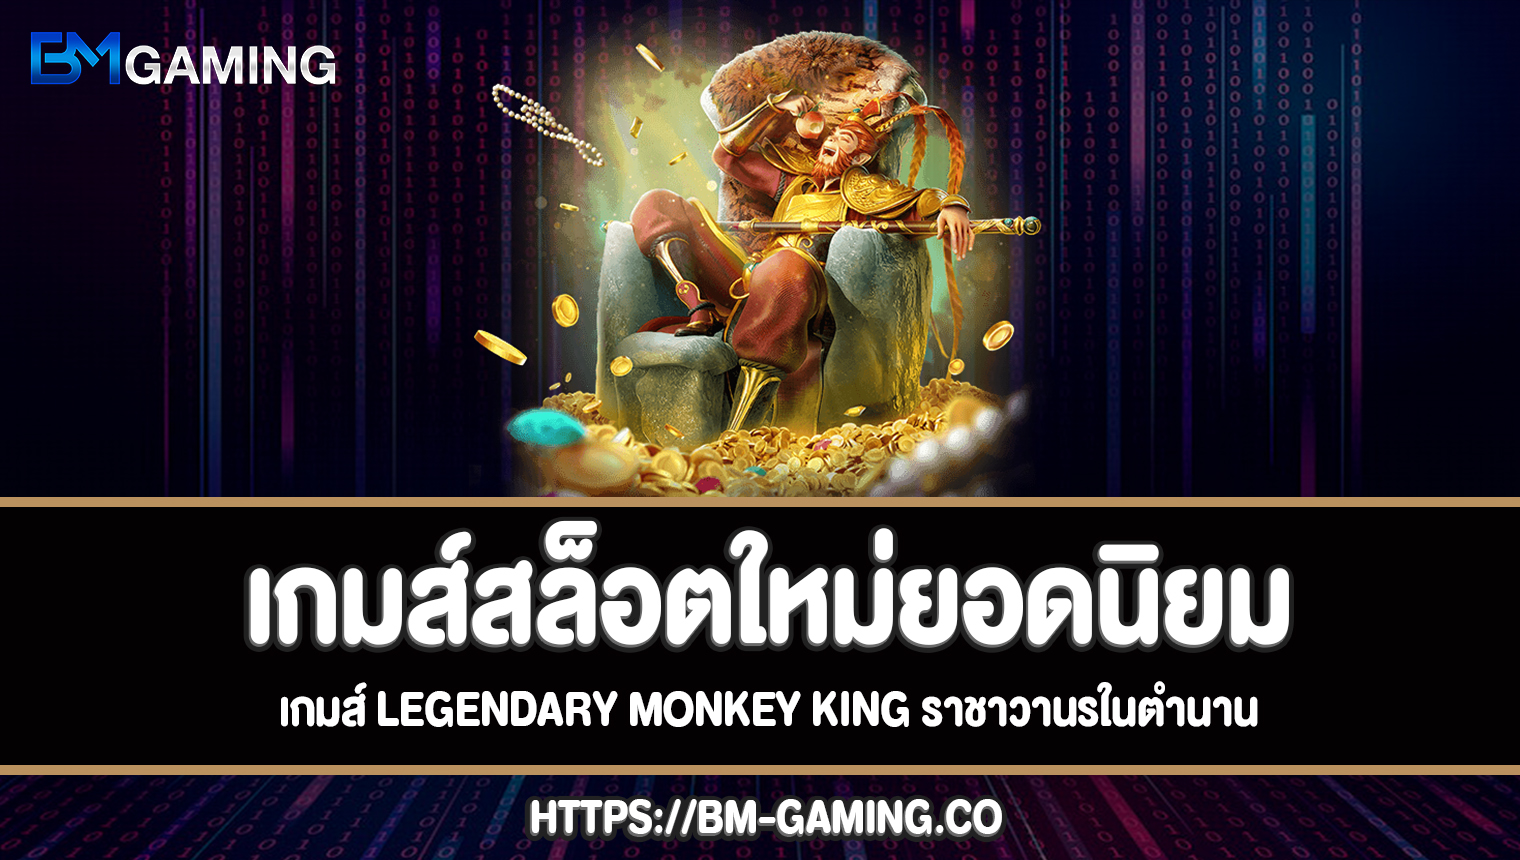 เกมส์ Legendary Monkey King ราชาวานรในตำนานทดลองเล่นฟรี